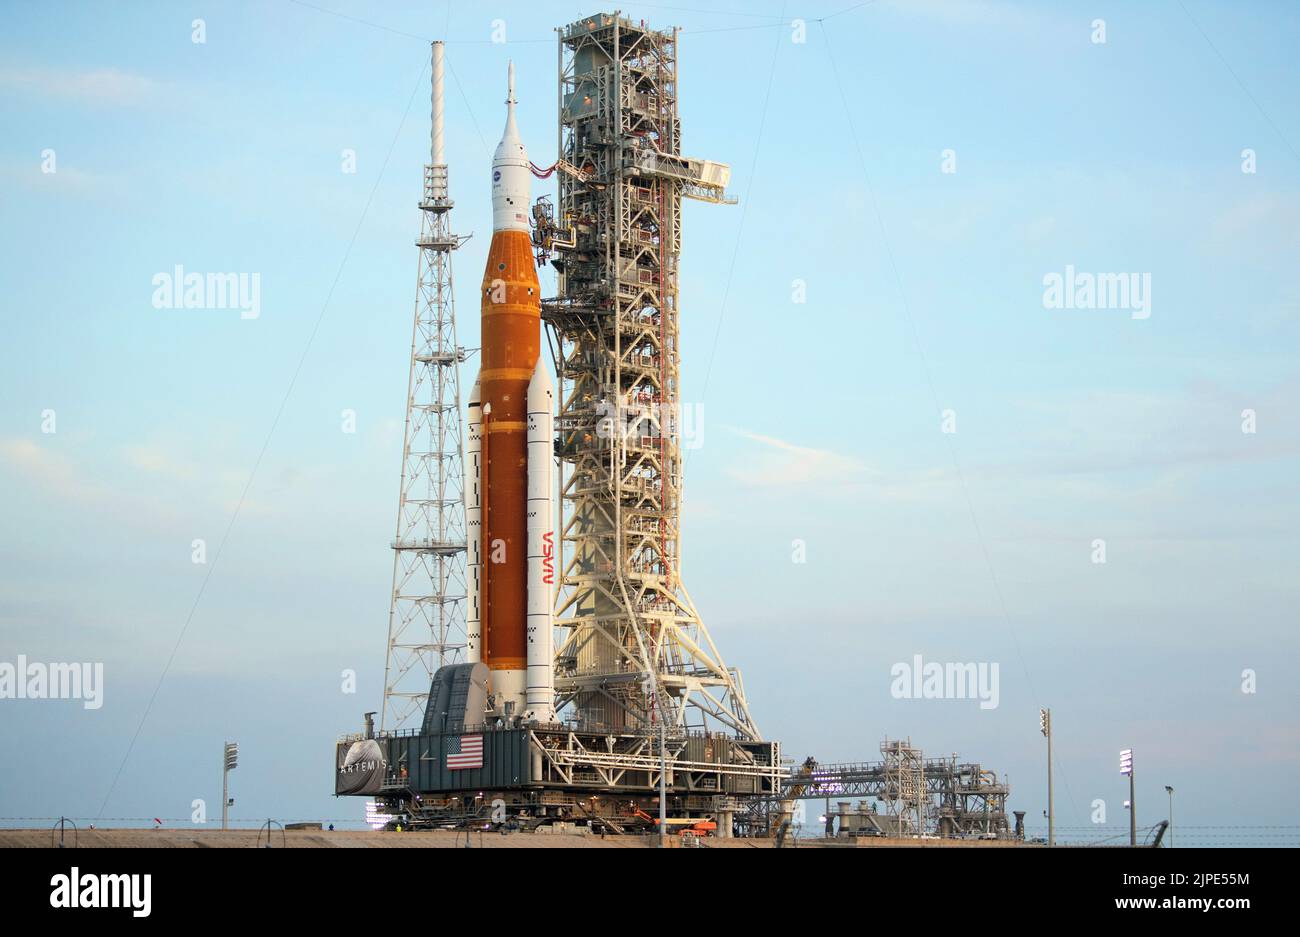 Floride, États-Unis. 16th août 2022. Artemis : la NASA prépare une fusée de lune géante pour le vol de jeune fille. La fusée SLS (Space Launch System) de la NASA à bord de l'engin spatial Orion est vue au sommet d'un lanceur mobile au Launch Pad 39B, le 17 AOÛT 2022, après avoir été déployée sur le lanceur au Kennedy Space Center de la NASA en Floride. La mission Artemis I de la NASA est le premier test intégré des systèmes d’exploration spatiale profonde de l’agence : l’engin spatial Orion, la fusée SLS et les systèmes terrestres auxiliaires. 17 août 2022 crédit: NASA/Joel Kowsky / Alamy Live News via Digitaleye crédit: J Marshall - Tribaleye Images/Alamy L Banque D'Images